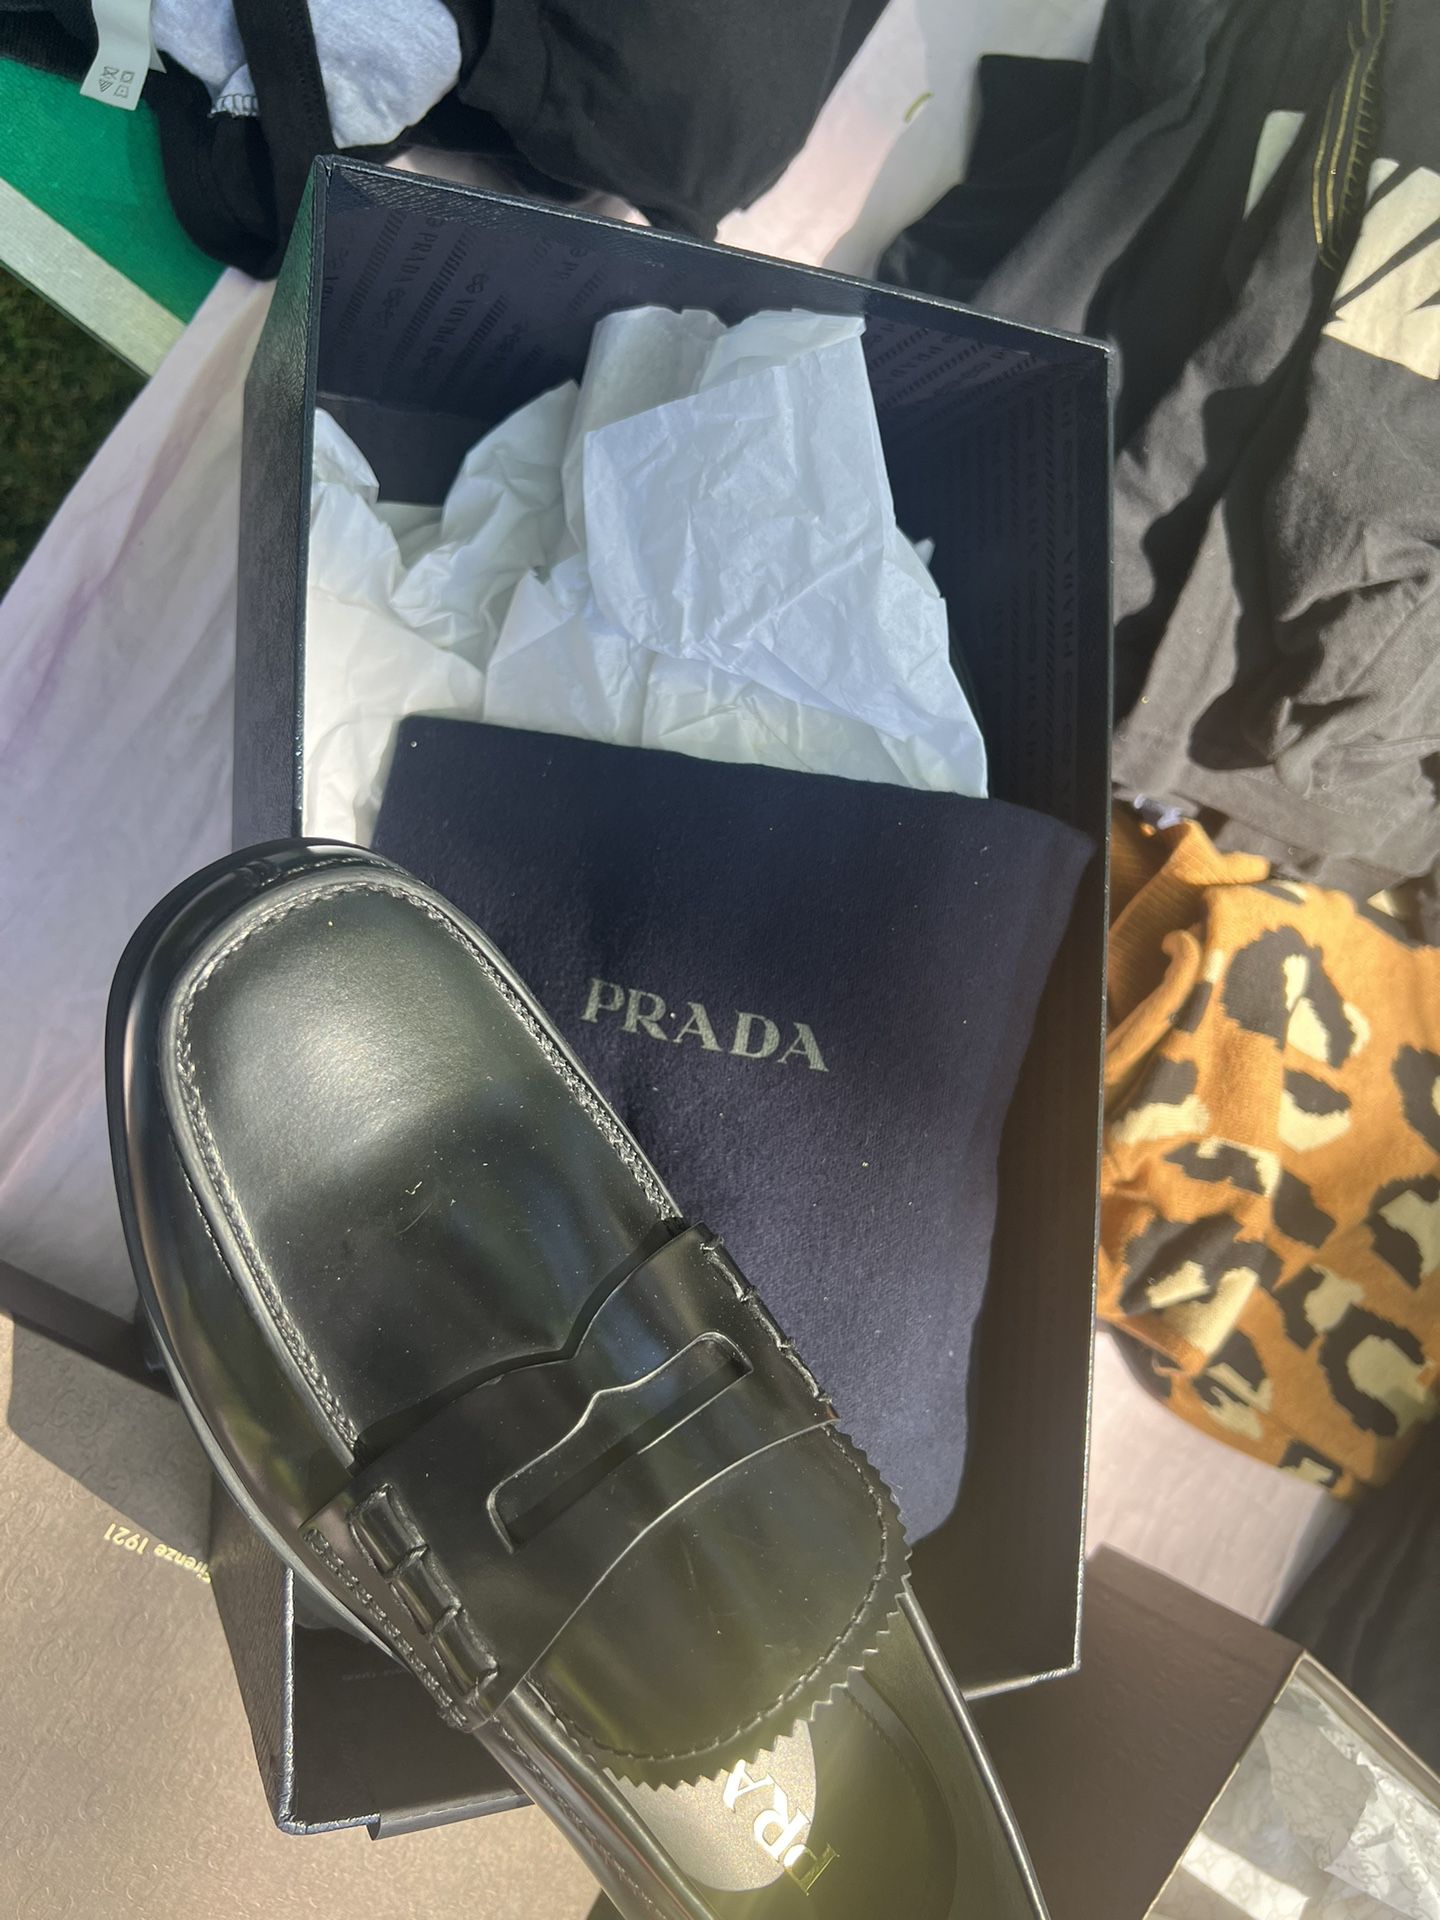 NEW Italian PRADA loafers $350 UK 7 M (10+ Women US)